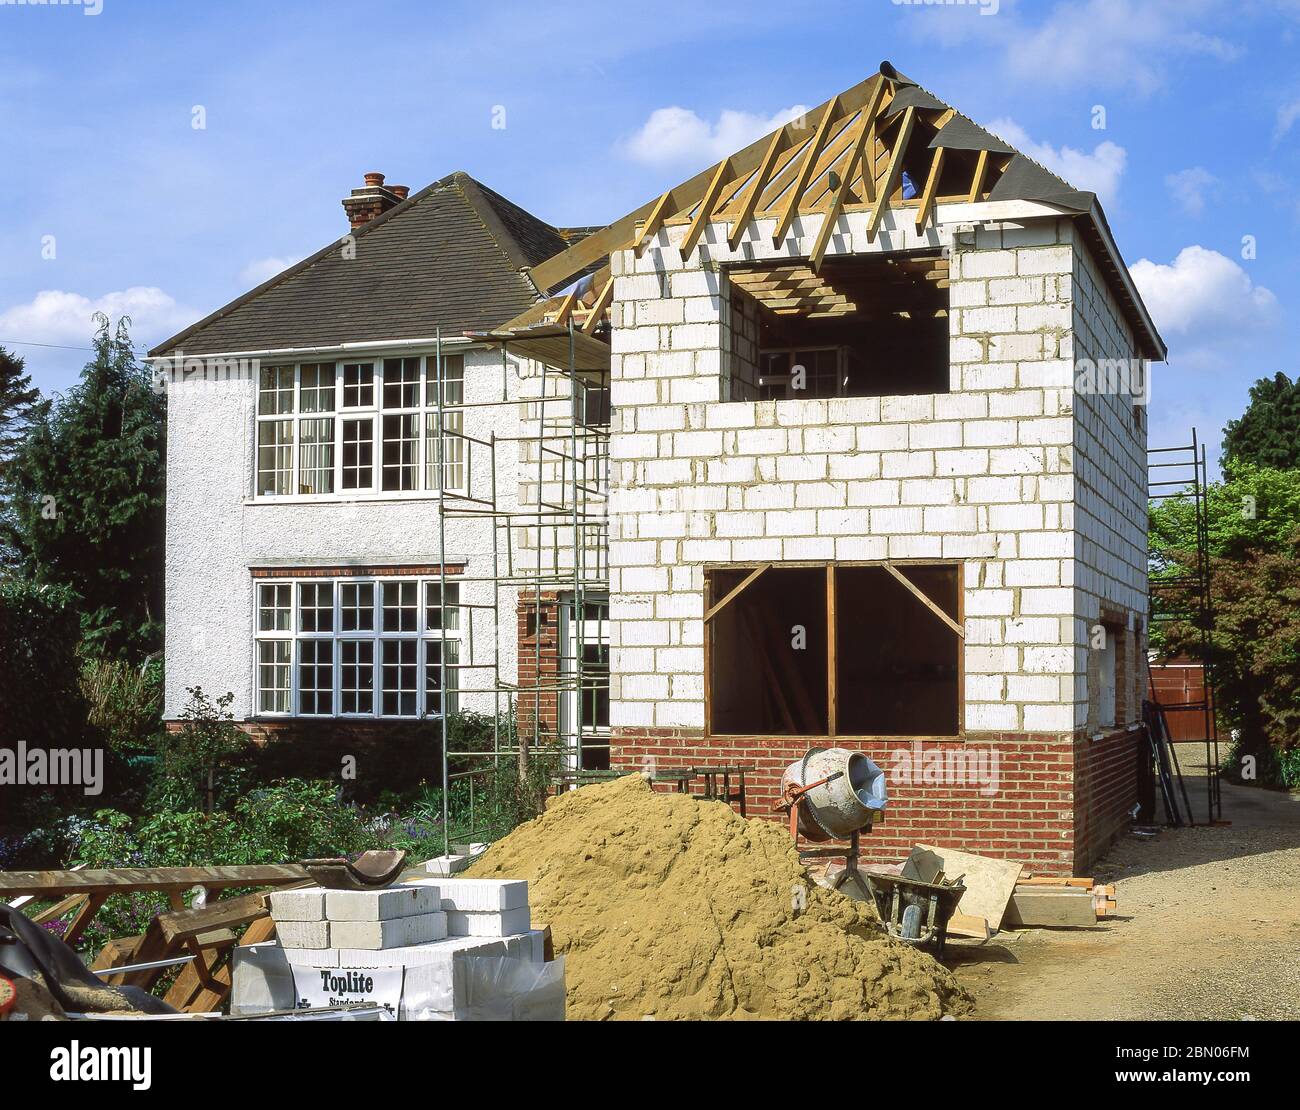 Constructeurs construisant l'extension de maison, Sunningdale, Berkshire, Angleterre, Royaume-Uni Banque D'Images